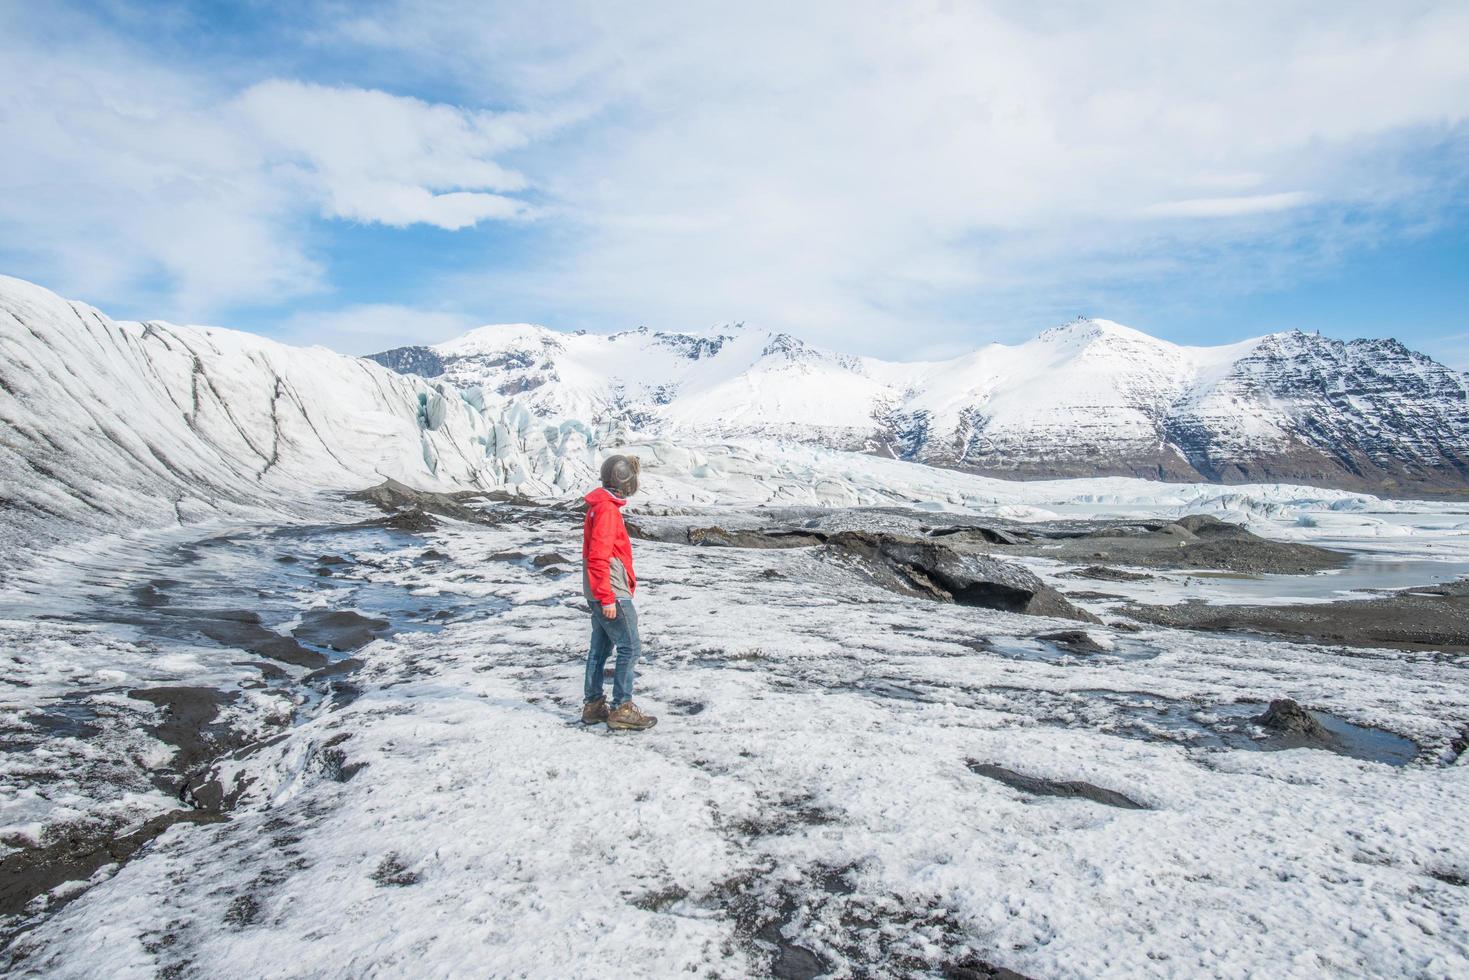 viaggio turistico e scoperta del bellissimo paesaggio sul ghiacciaio skaftafell del parco nazionale vatnajokull nell'islanda meridionale. skaftafell è una riserva naturale situata nel sud-est dell'Islanda. foto